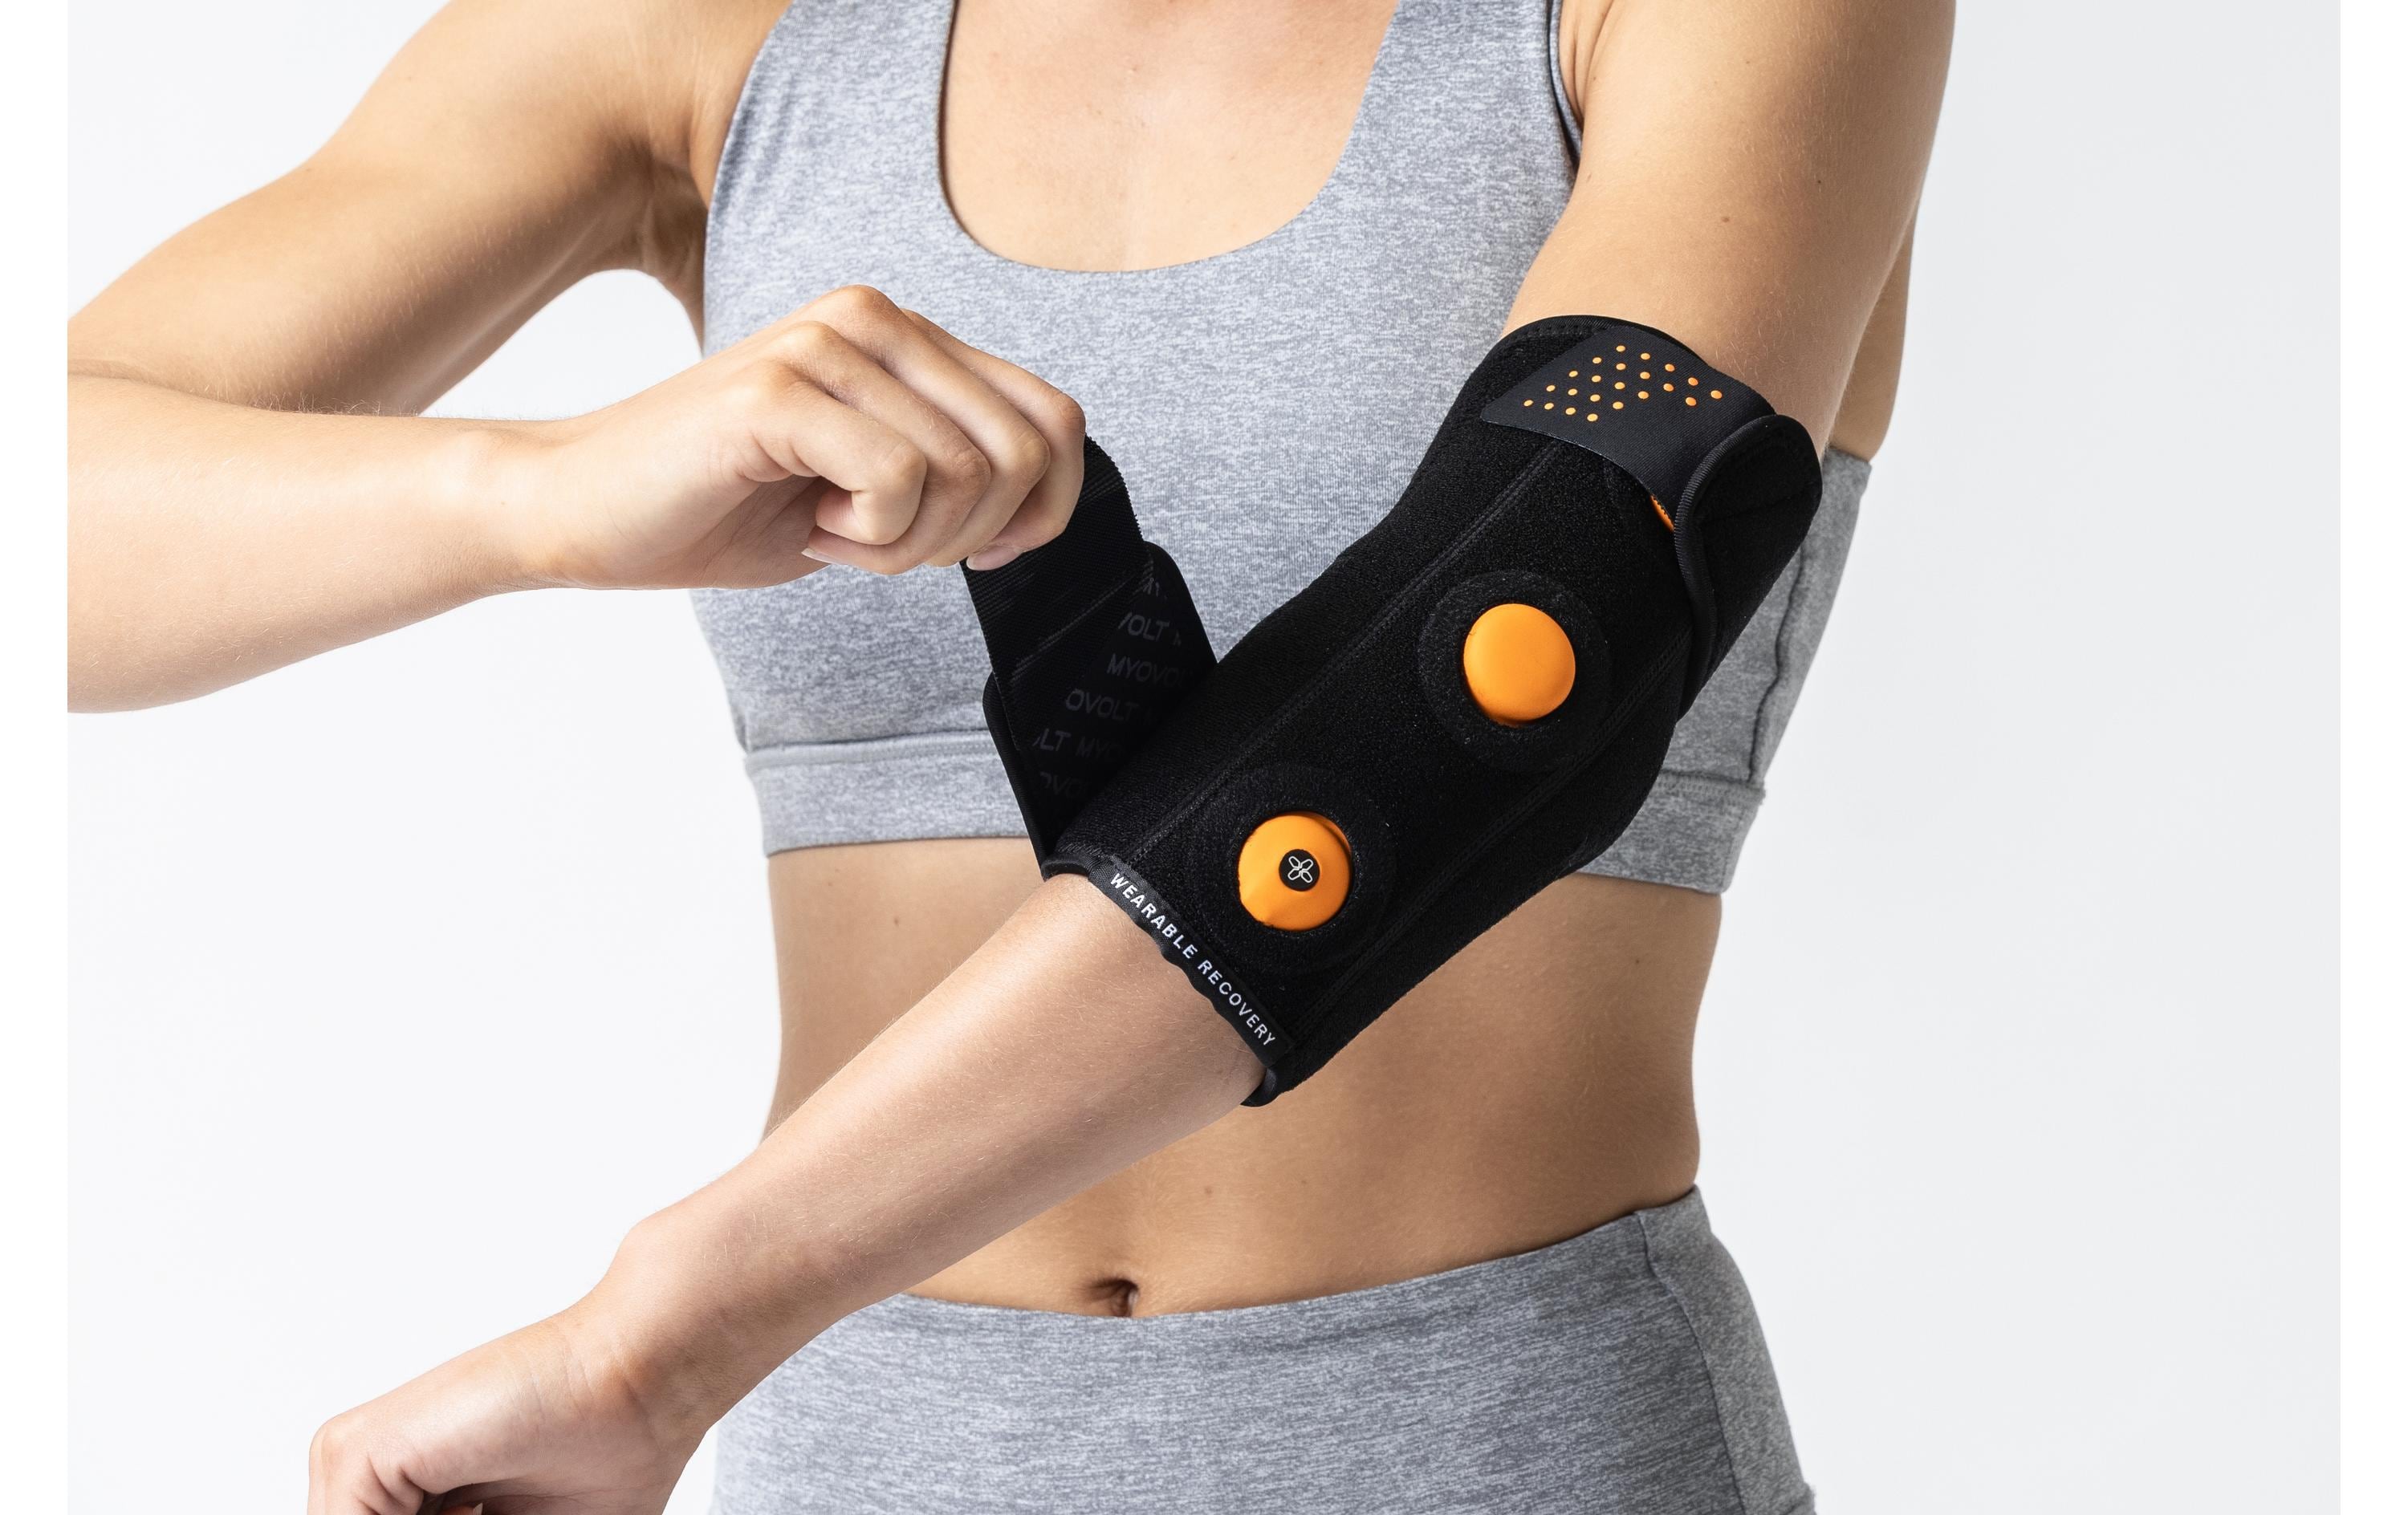 Myovolt Fitness Massagegerät Unterarm, beide Seite möglich